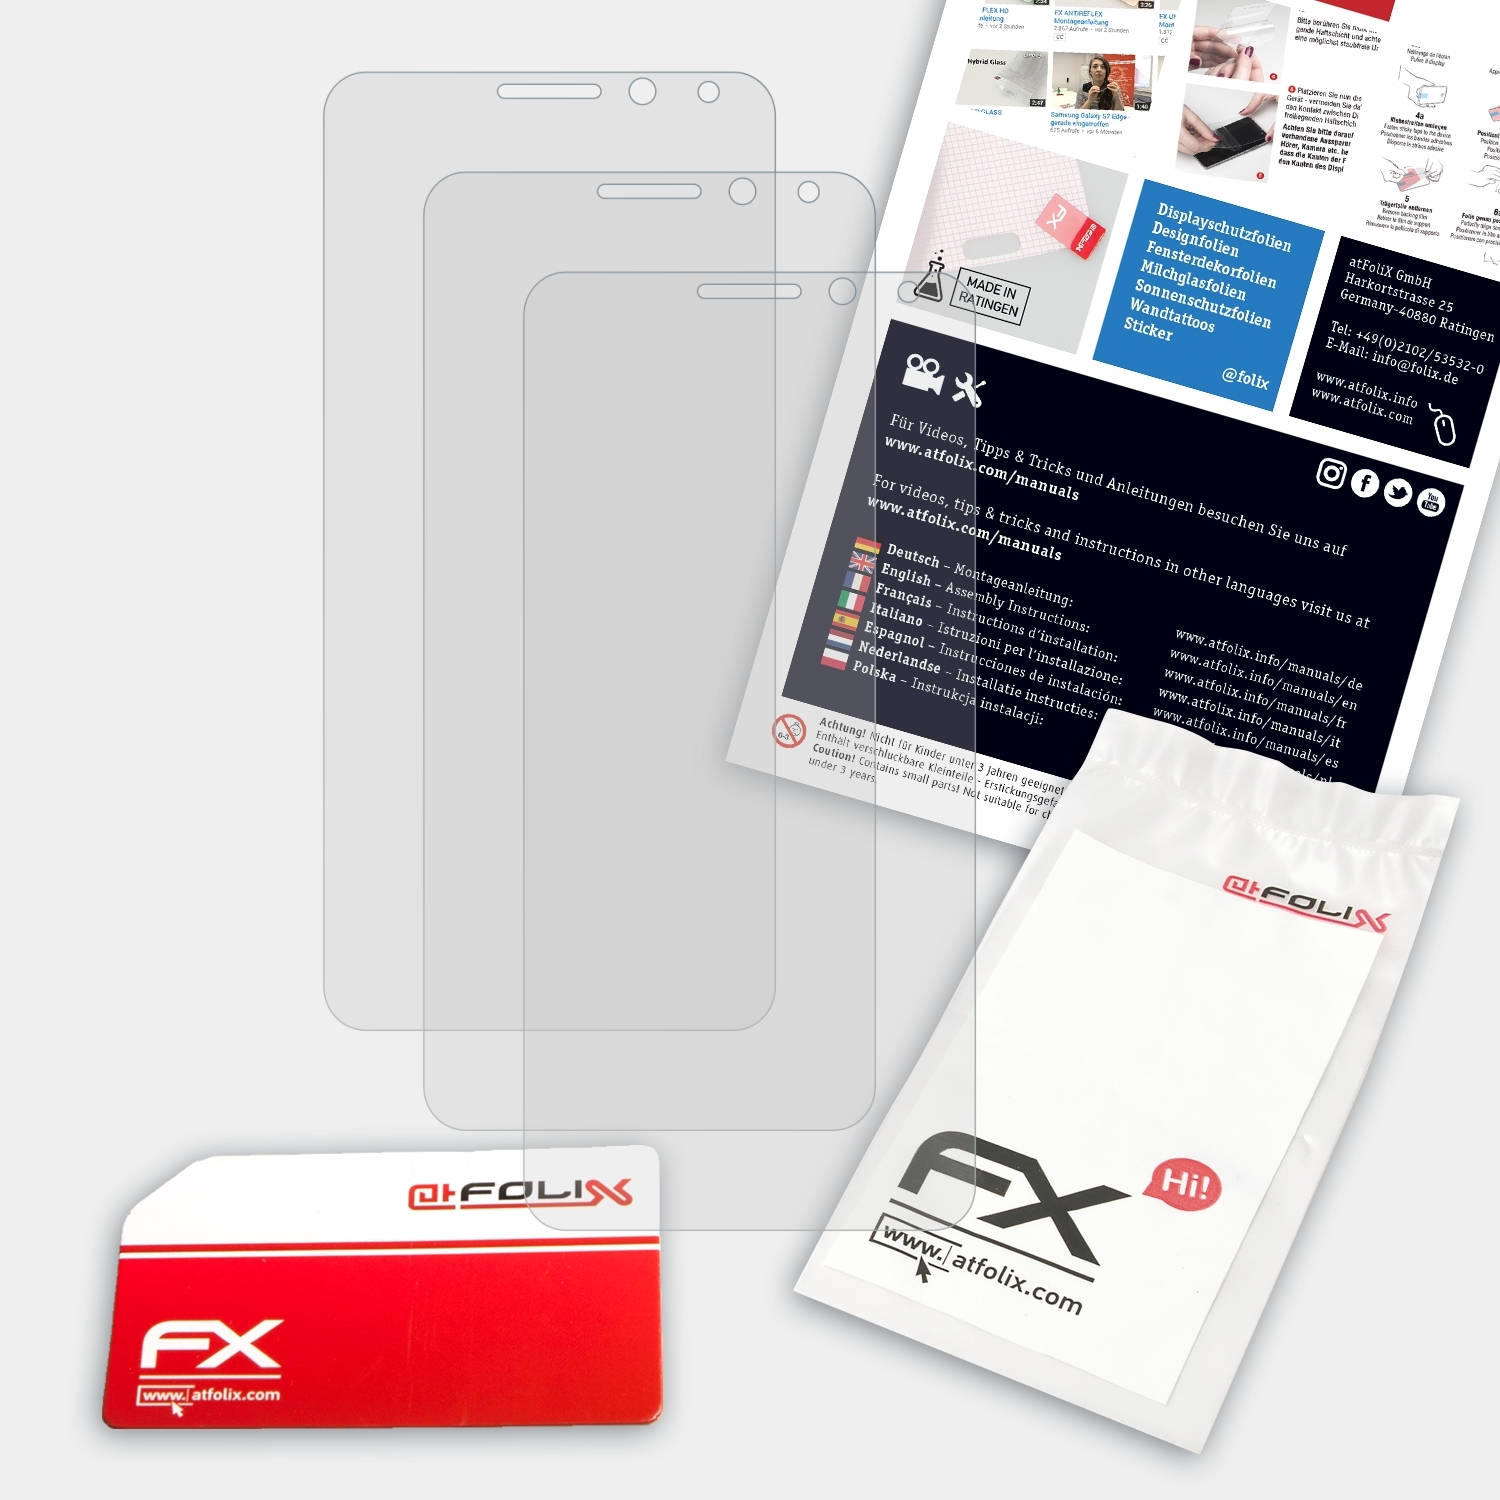 ATFOLIX 3x FX-Antireflex Displayschutz(für General-Mobile GM 5 Plus)